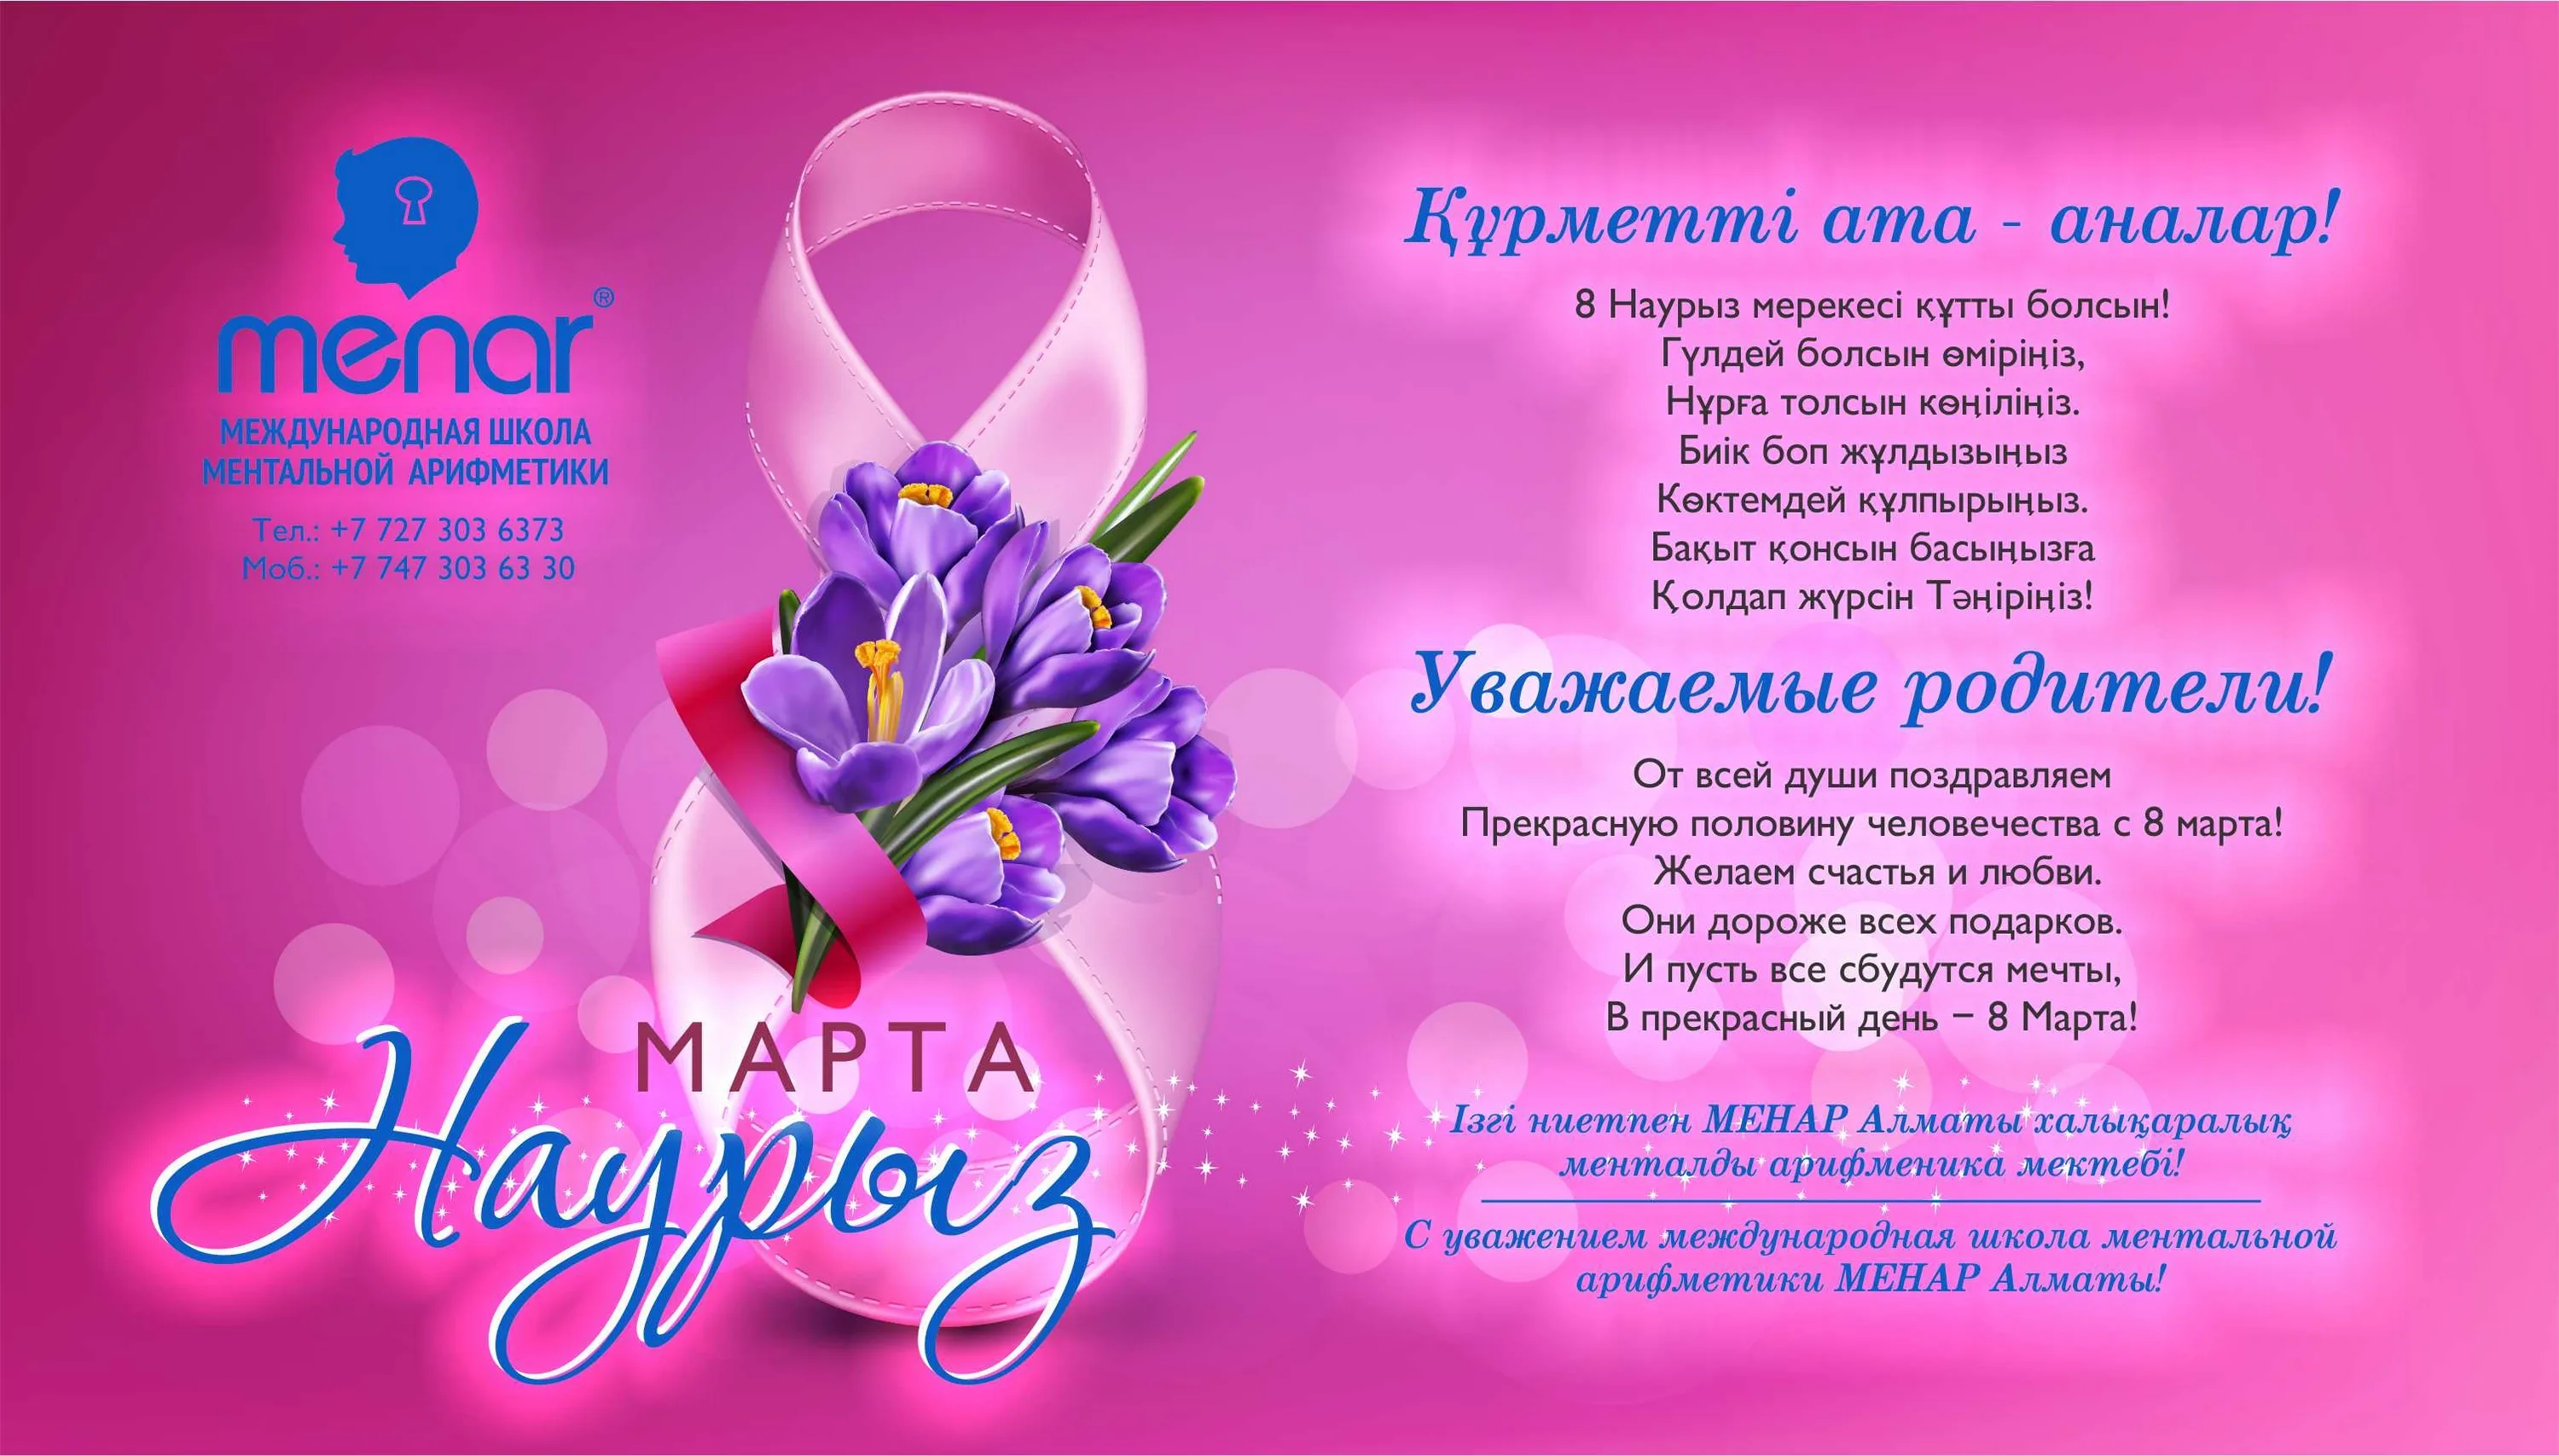 Фото Поздравления с 8 Марта на казахском языке с переводом на русский #58